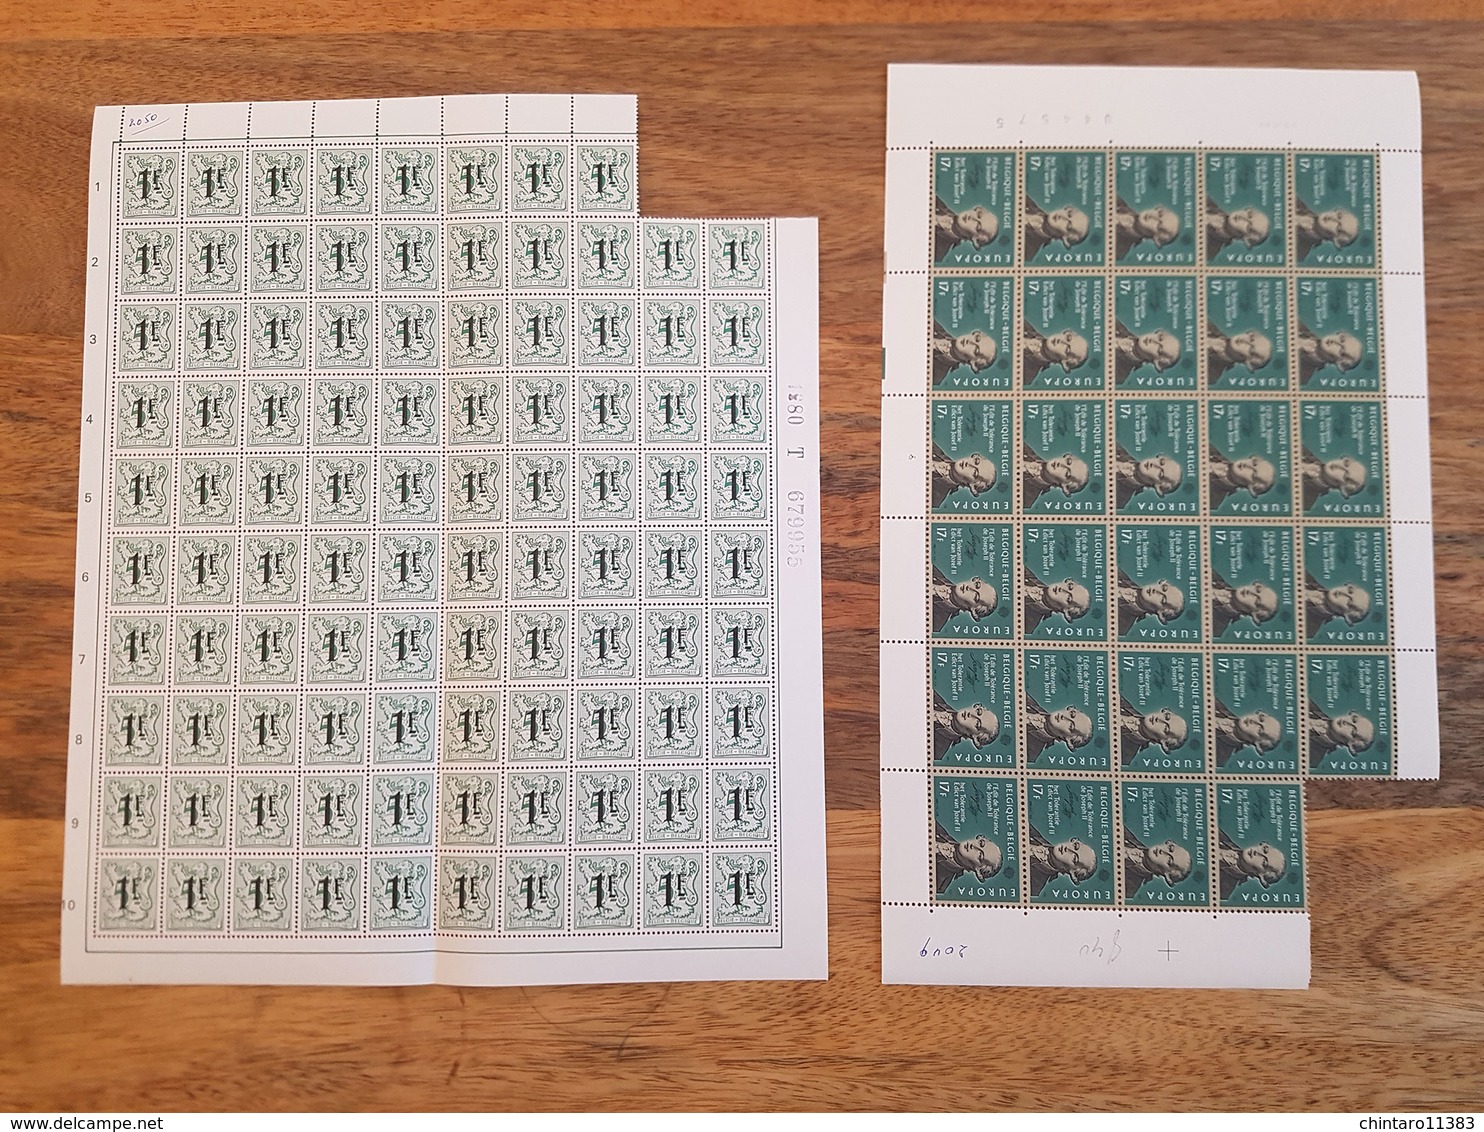 Lot feuilles incomplètes (manque 1) de timbres Belgique - Année 1982